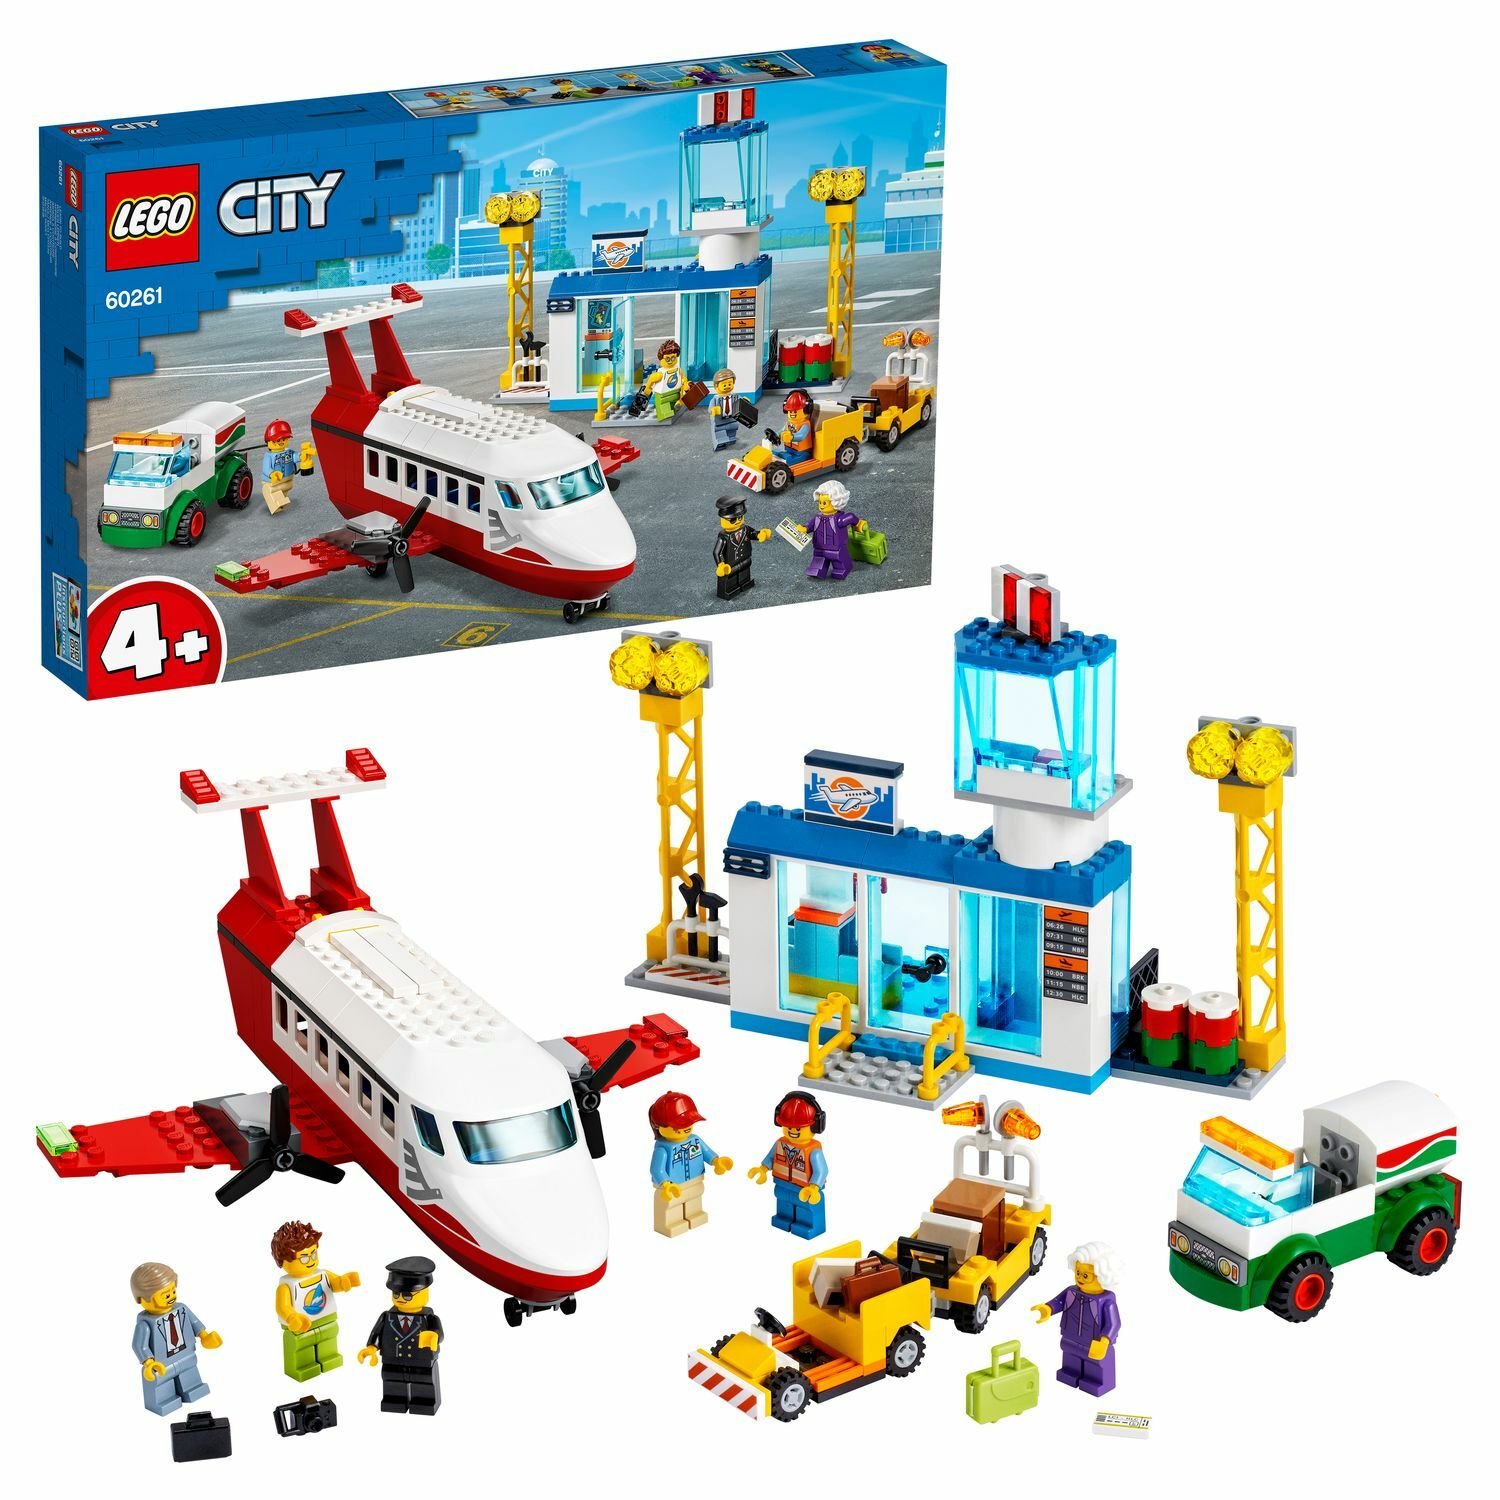 LEGO City 60261 Airport Городской аэропорт - Пенза 